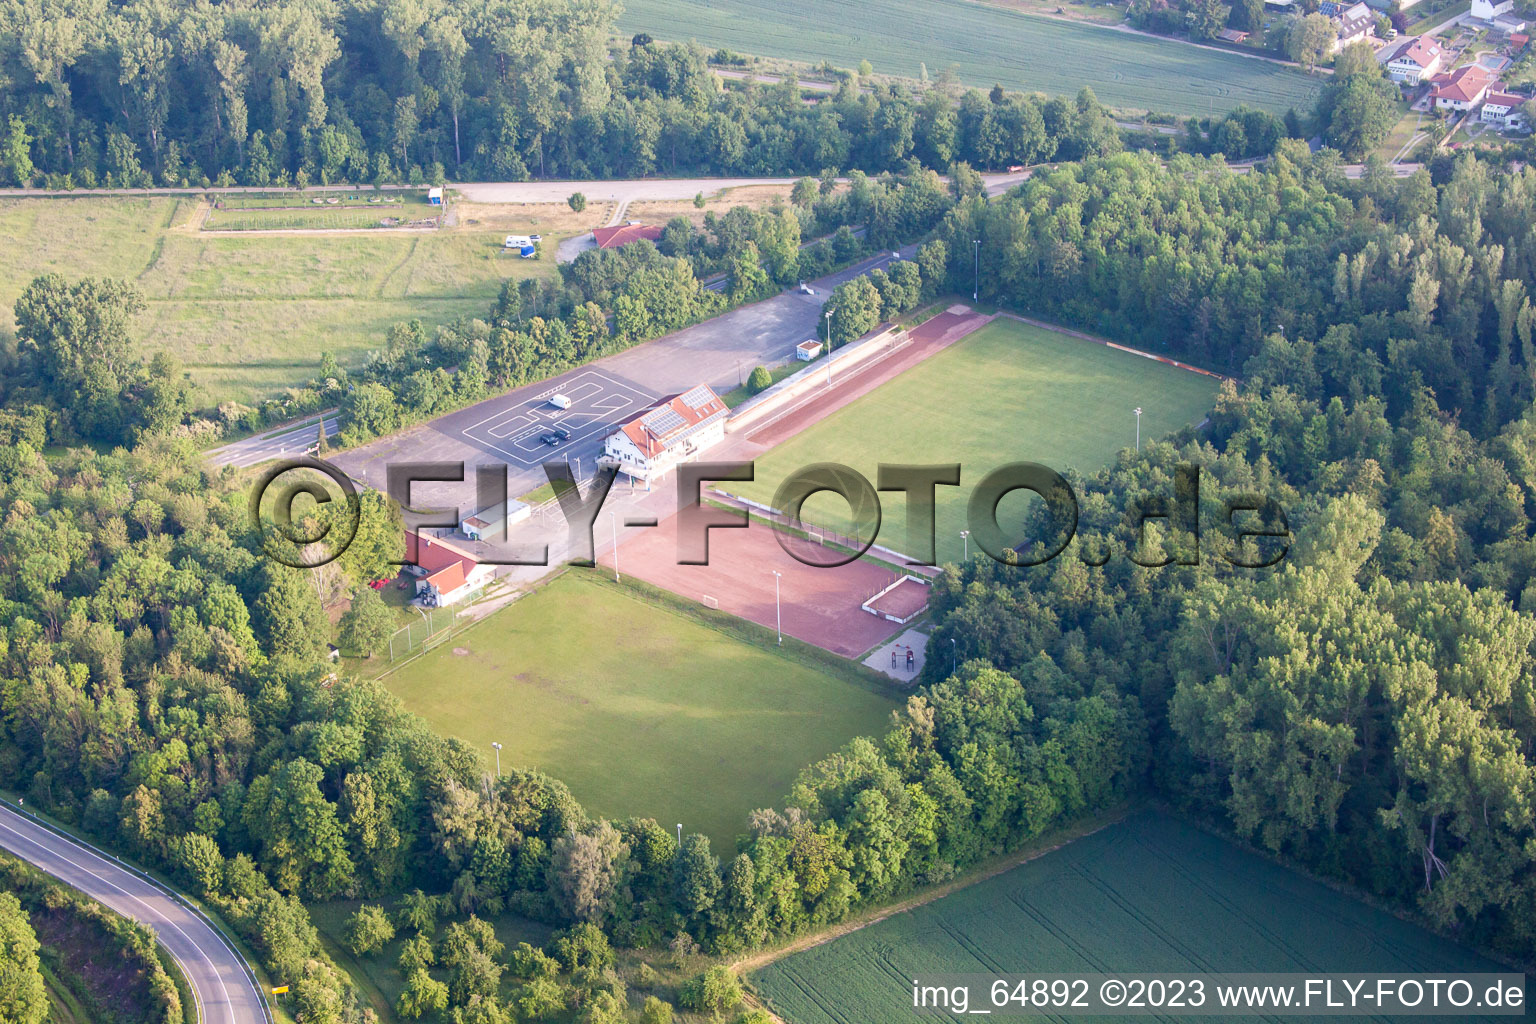 Photographie aérienne de Terrain de jeux VFR à le quartier Rheinsheim in Philippsburg dans le département Bade-Wurtemberg, Allemagne